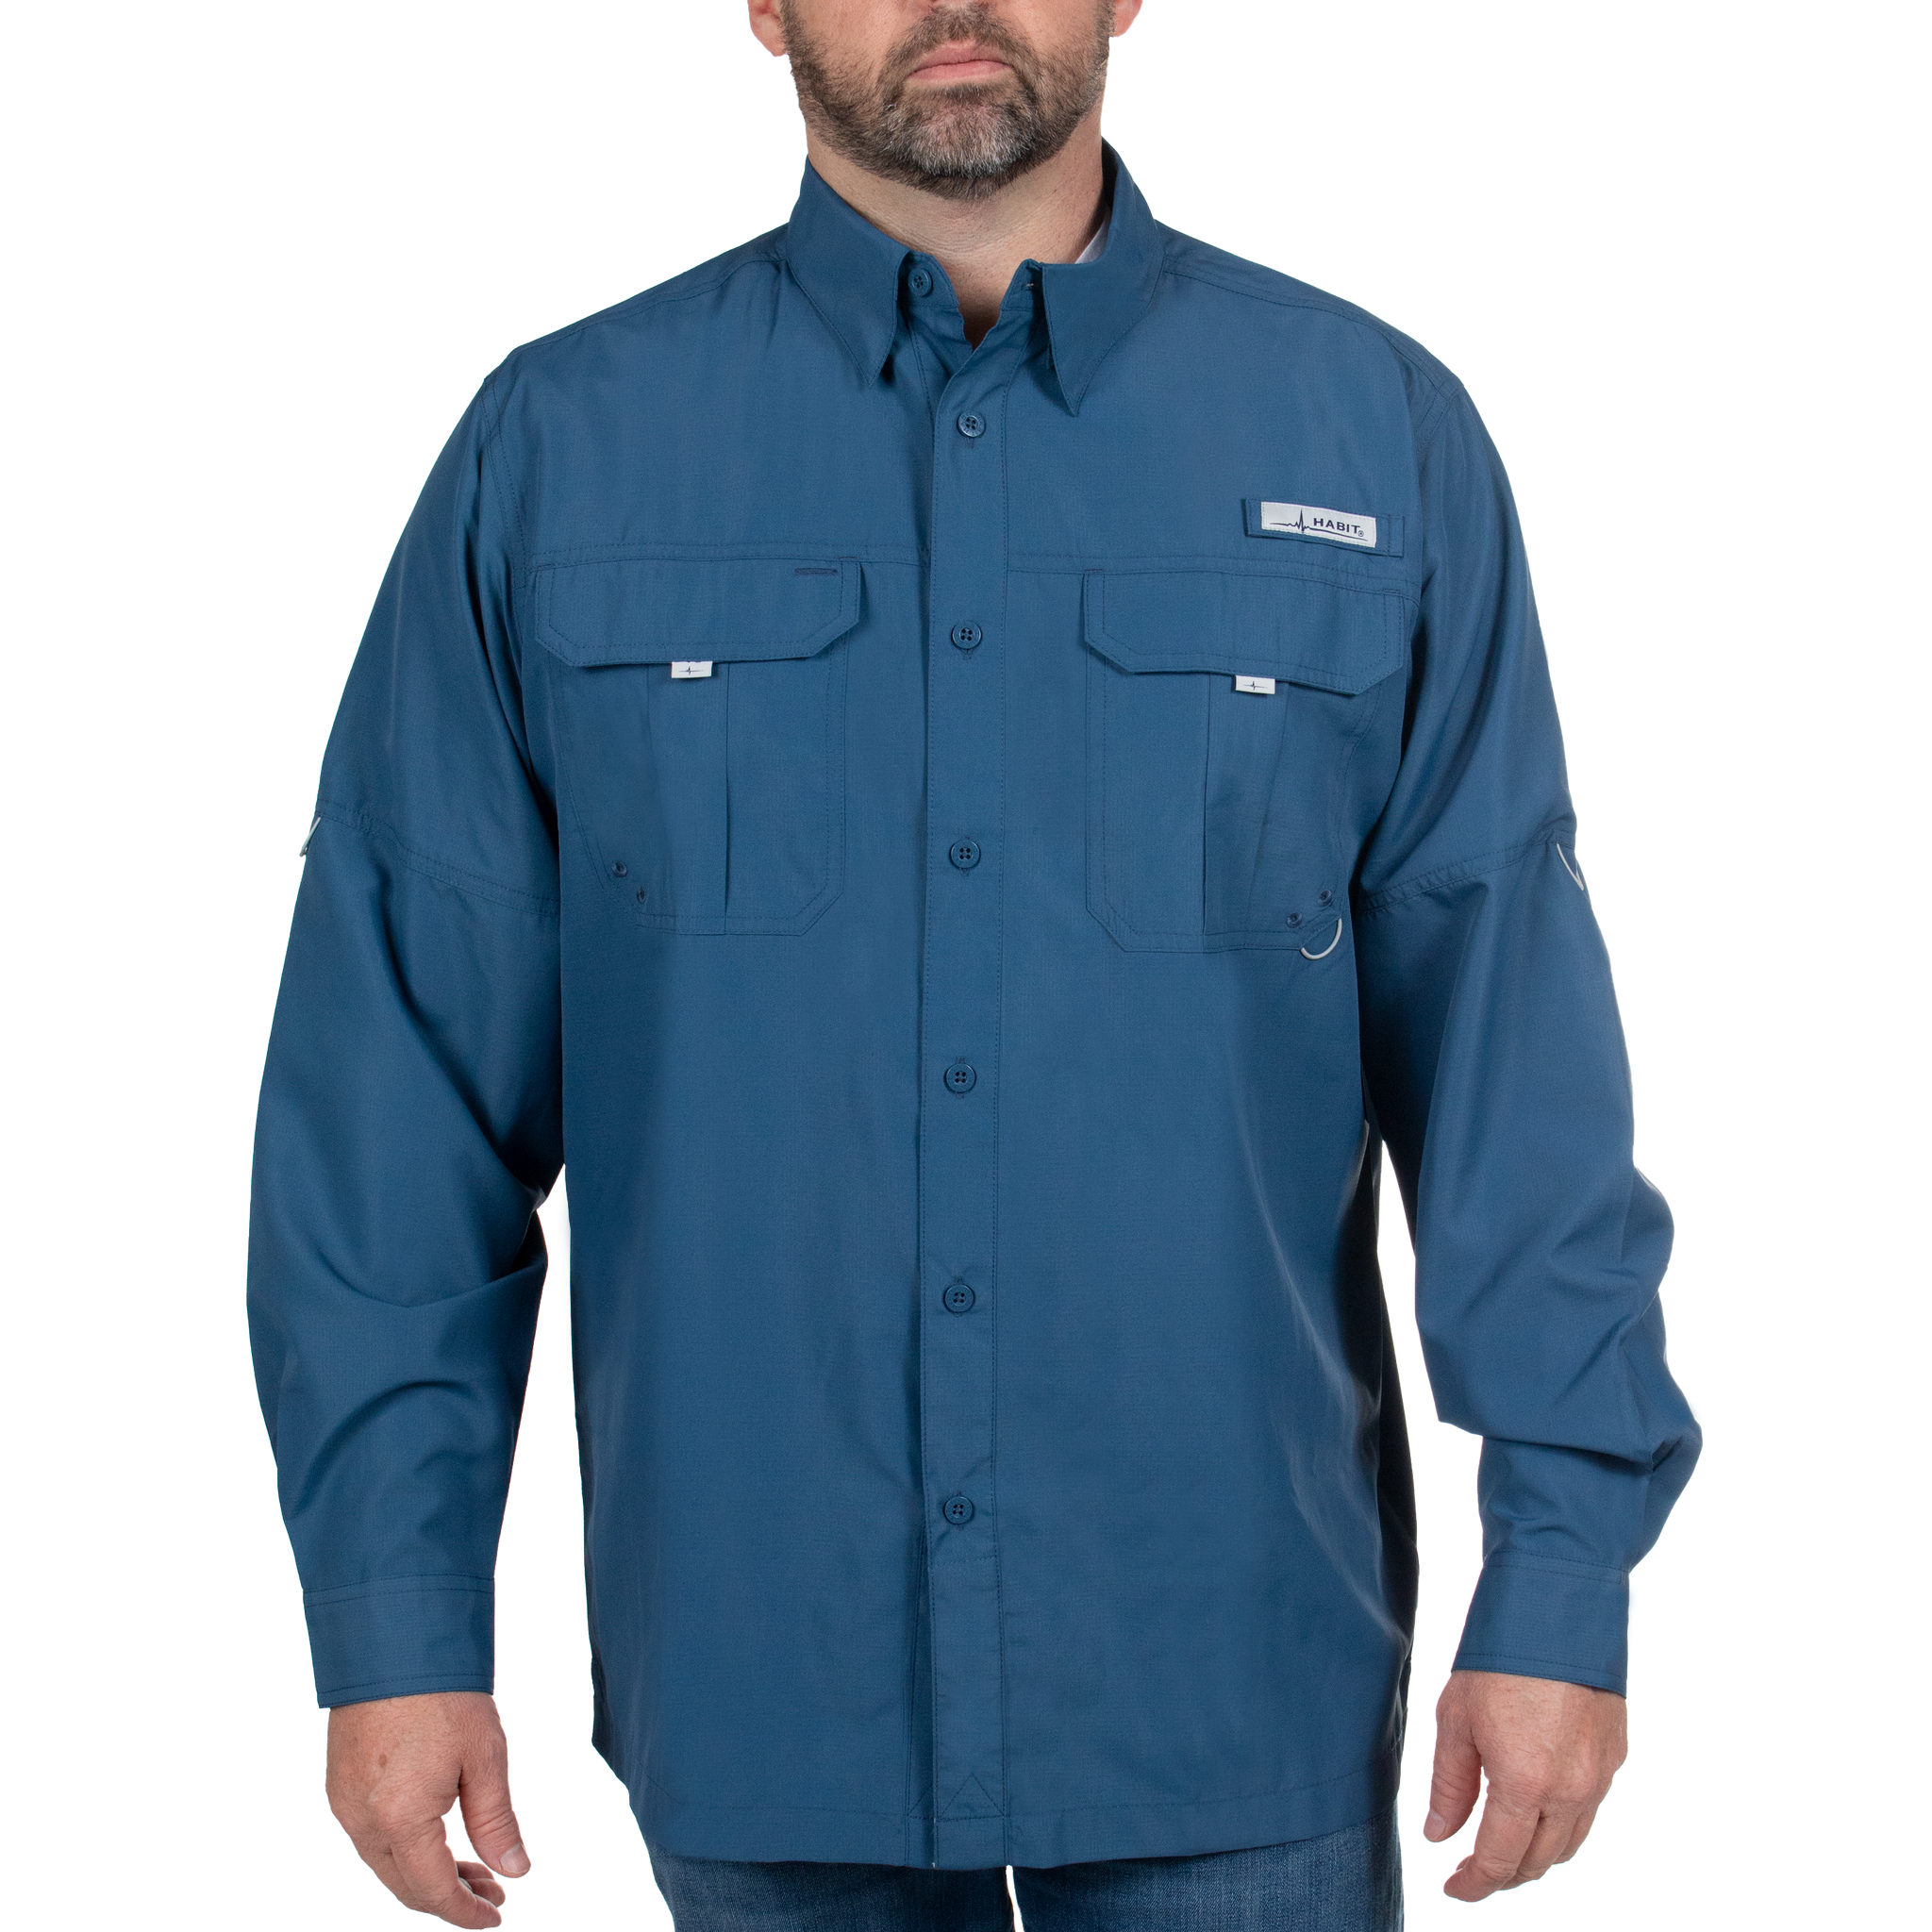 Men’s Fourche Mountain Long Sleeve River Guide Fishing Shirt Ensign Blue